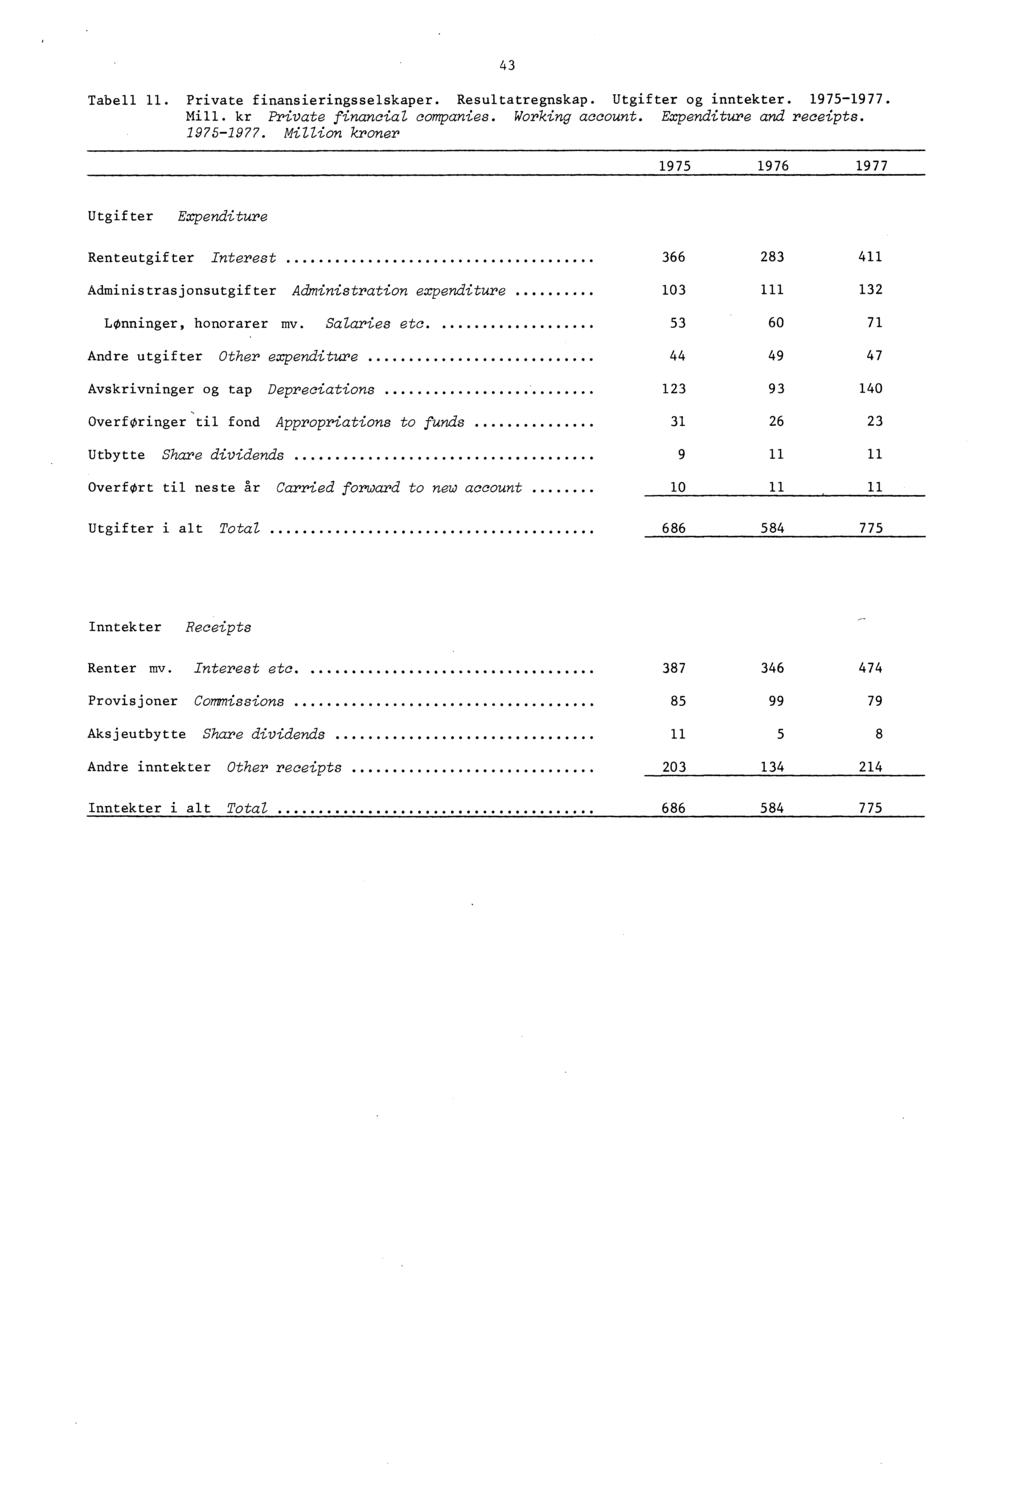 Tabell 11. Private finansieringsselskaper. Resultatregnskap. Utgifter og inntekter. 1975-1977.